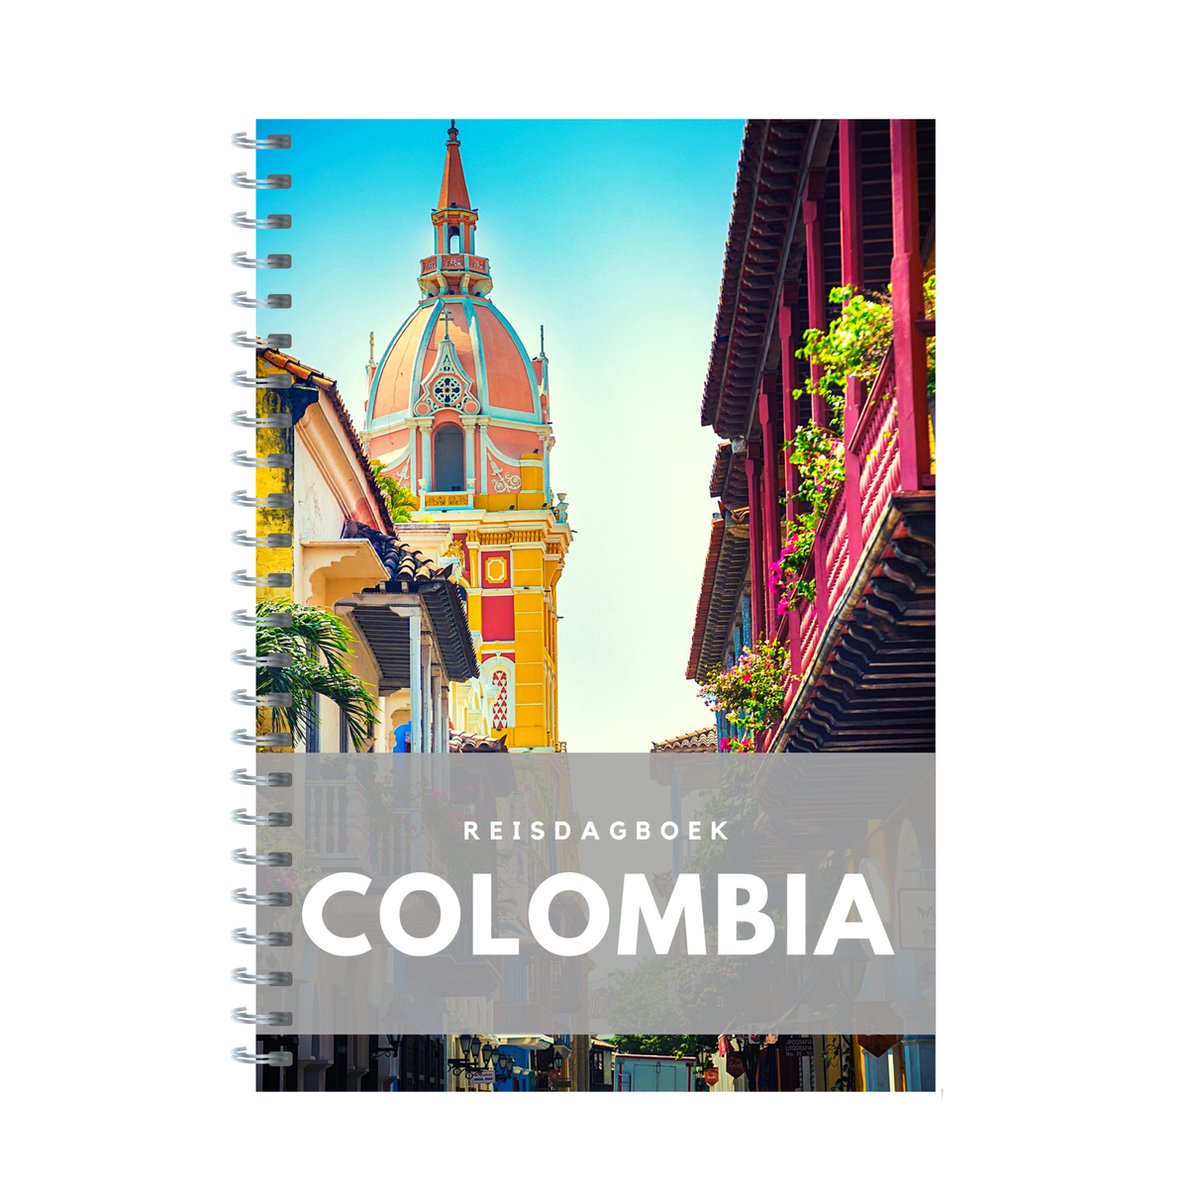 Reisdagboek Colombia - schrijf je eigen reisboek